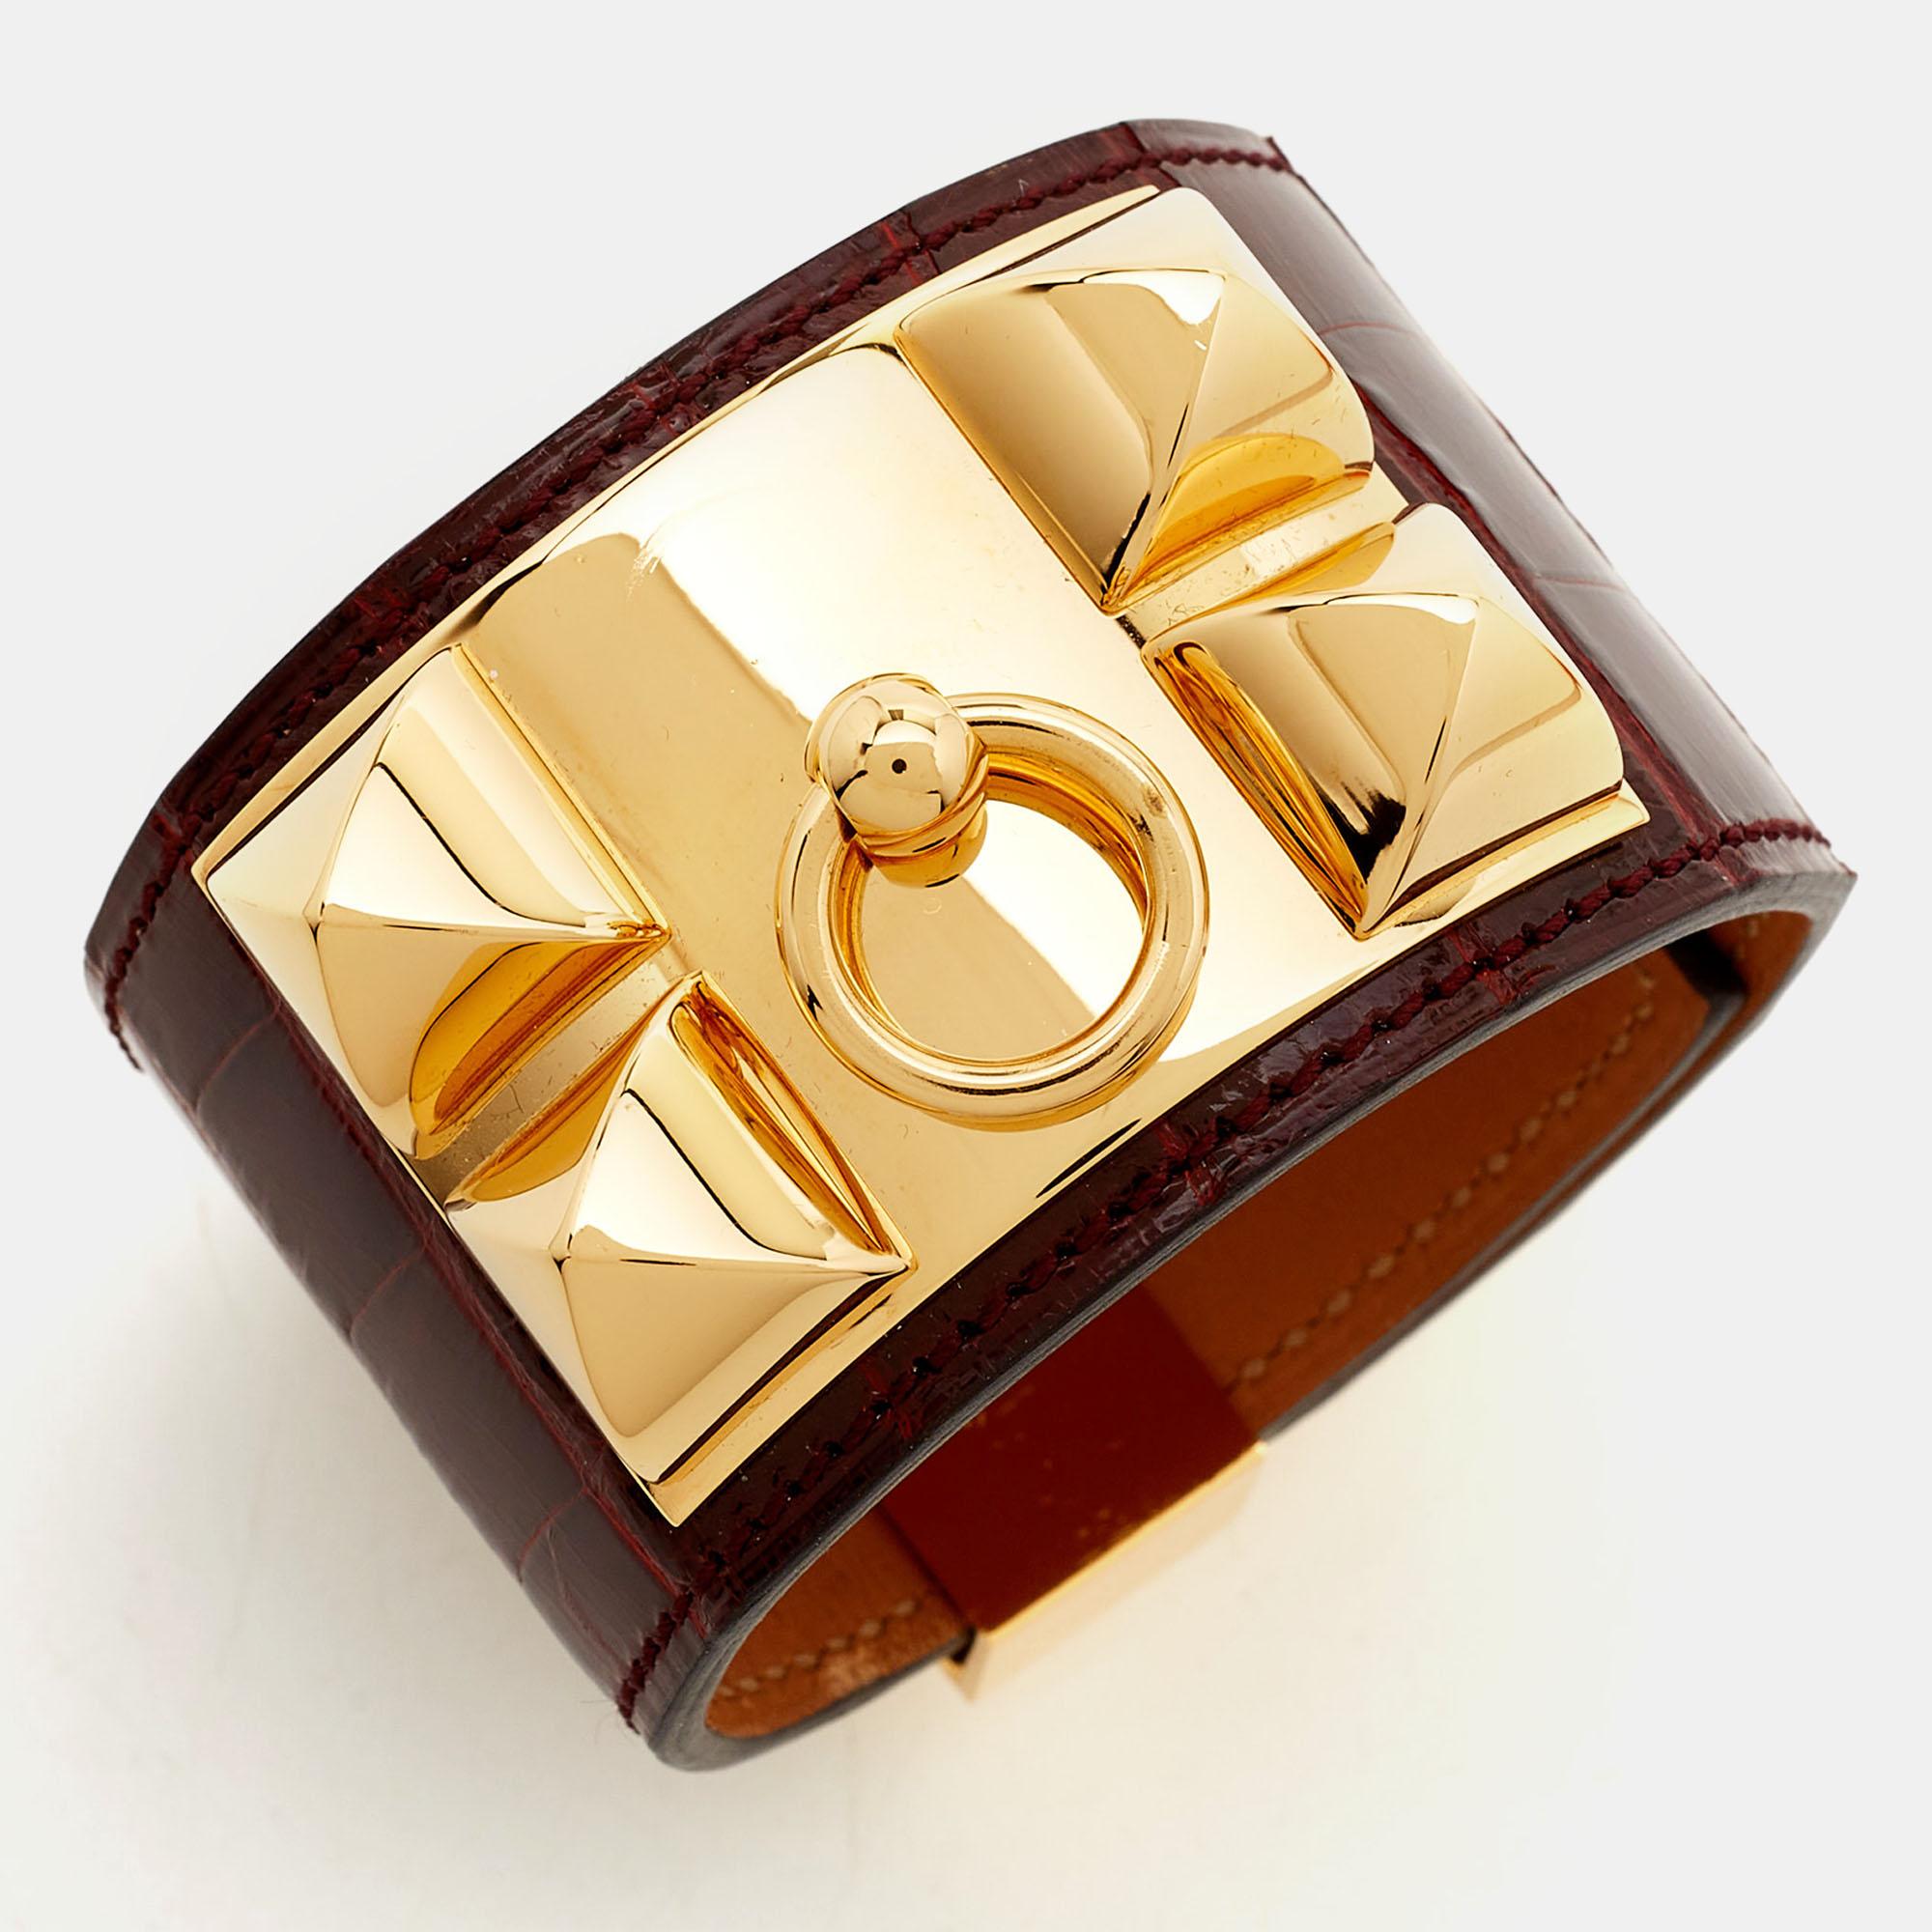 Ajoutez la magie d'Hermès à votre façon d'accessoiriser avec ce bracelet. Ce bracelet en cuir d'alligator est stylisé avec des lignes fines et du métal doré. Souligné par des détails signature, il ne manquera pas d'ajouter un charme luxueux à votre